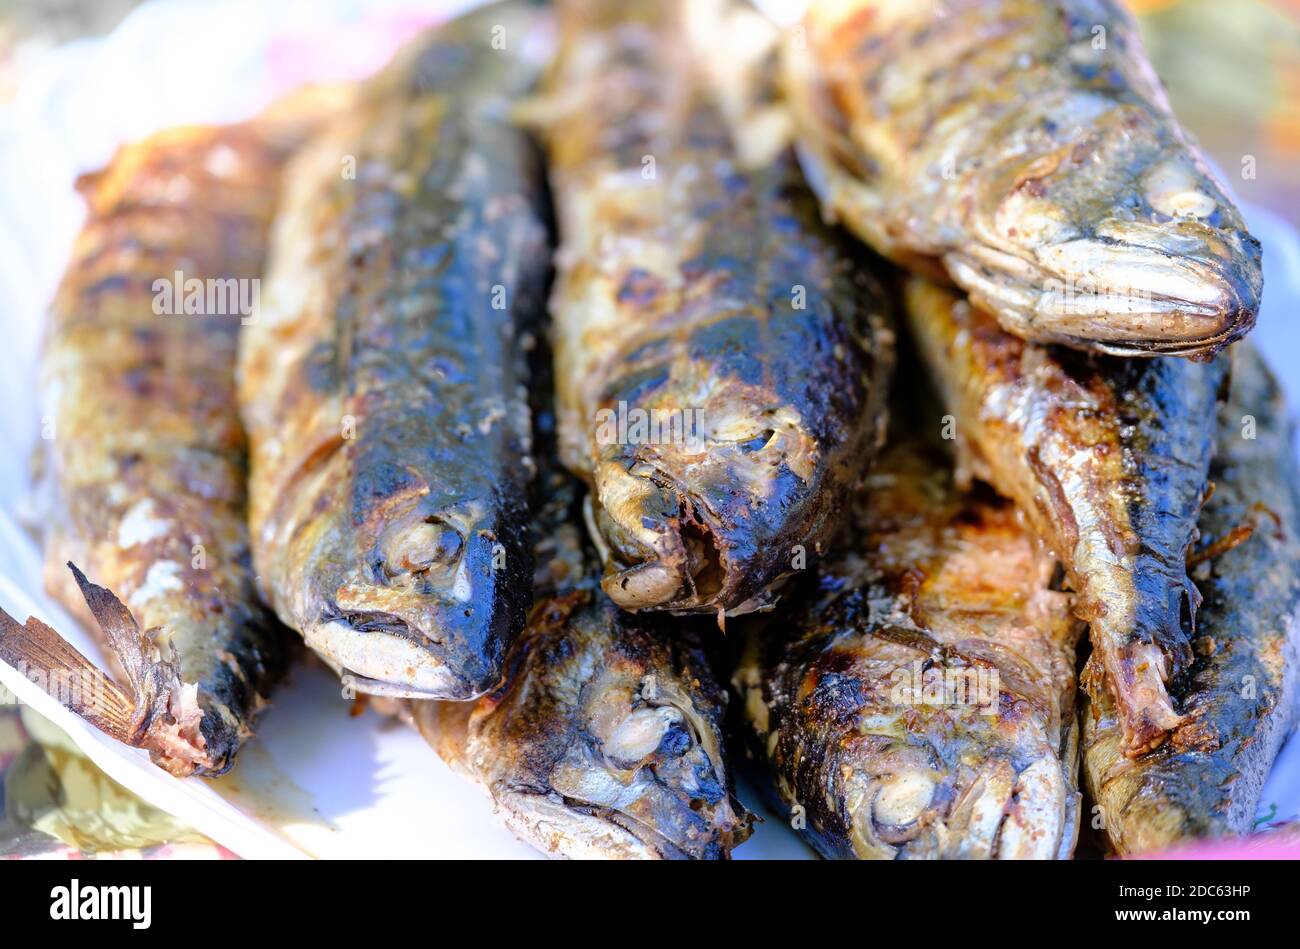 Gegrillter, würziger Makrelenfisch auf einem Gericht. Gerösteter Fisch. Gegrillter Fisch Stockfoto